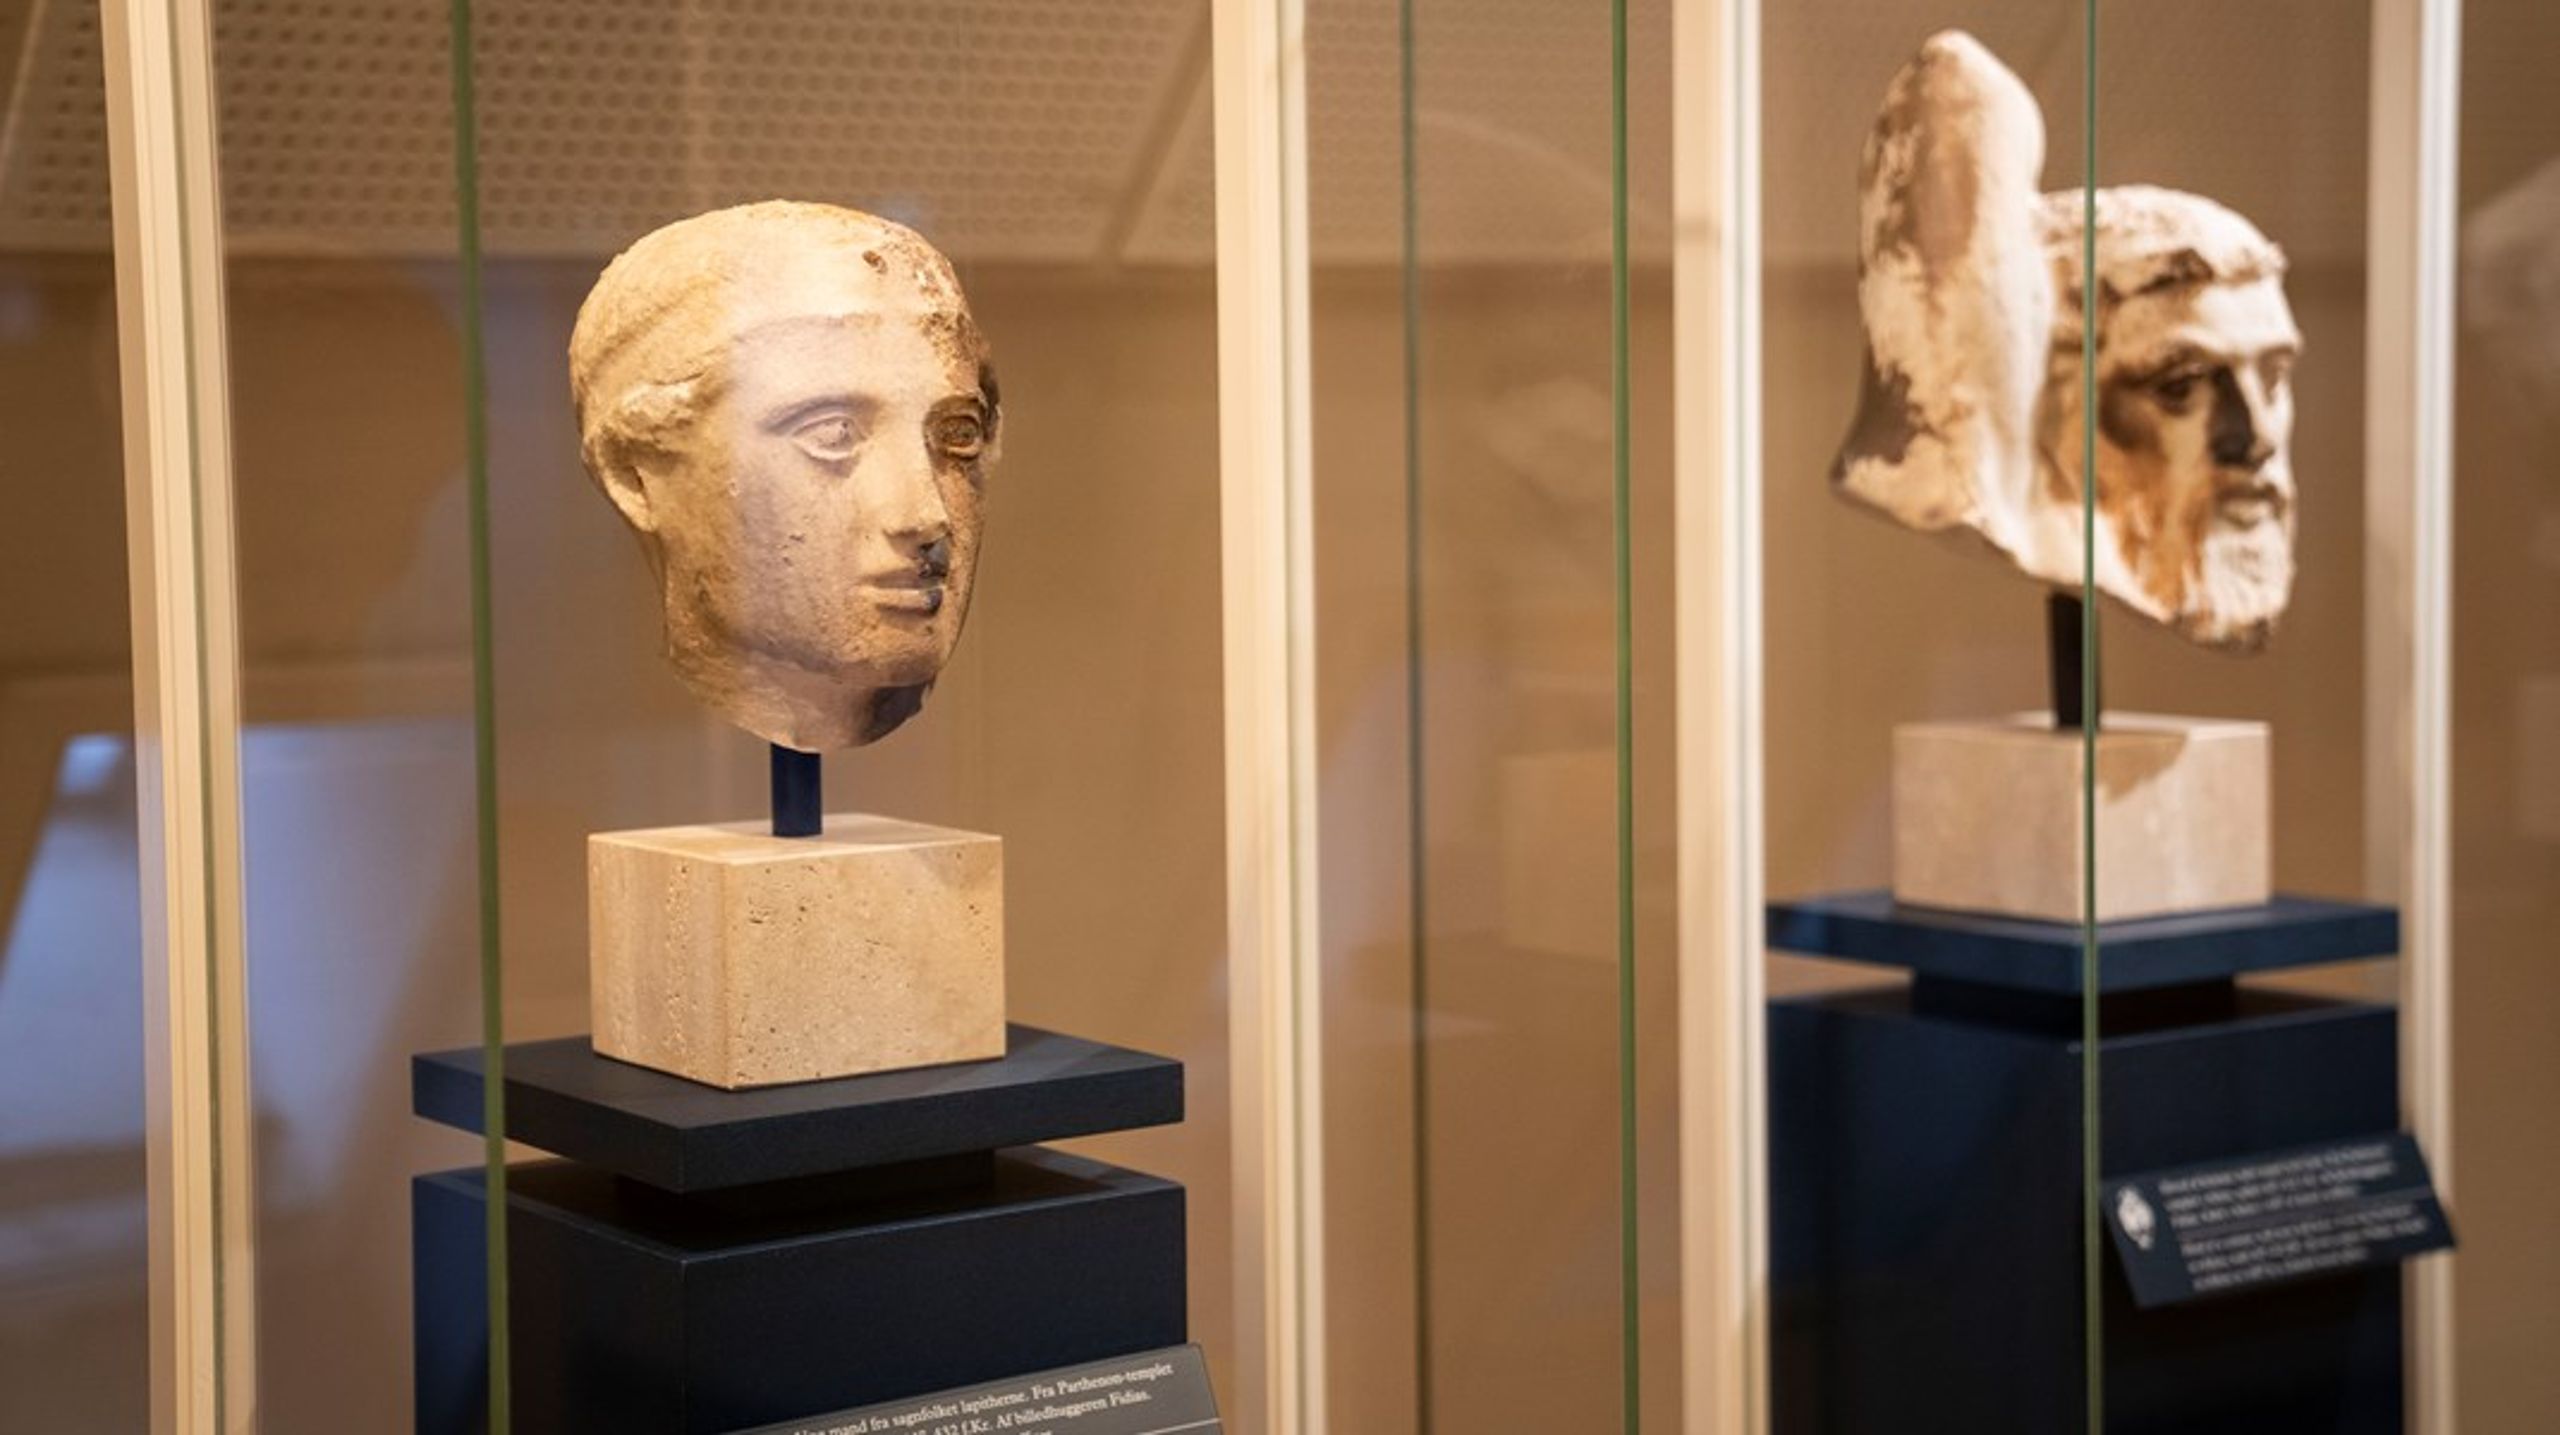 De omkring 2500 år gamle græske marmorhoveder fra Parthenon-templet i Athen, udstillet i Nationalmuseets antiksamling.